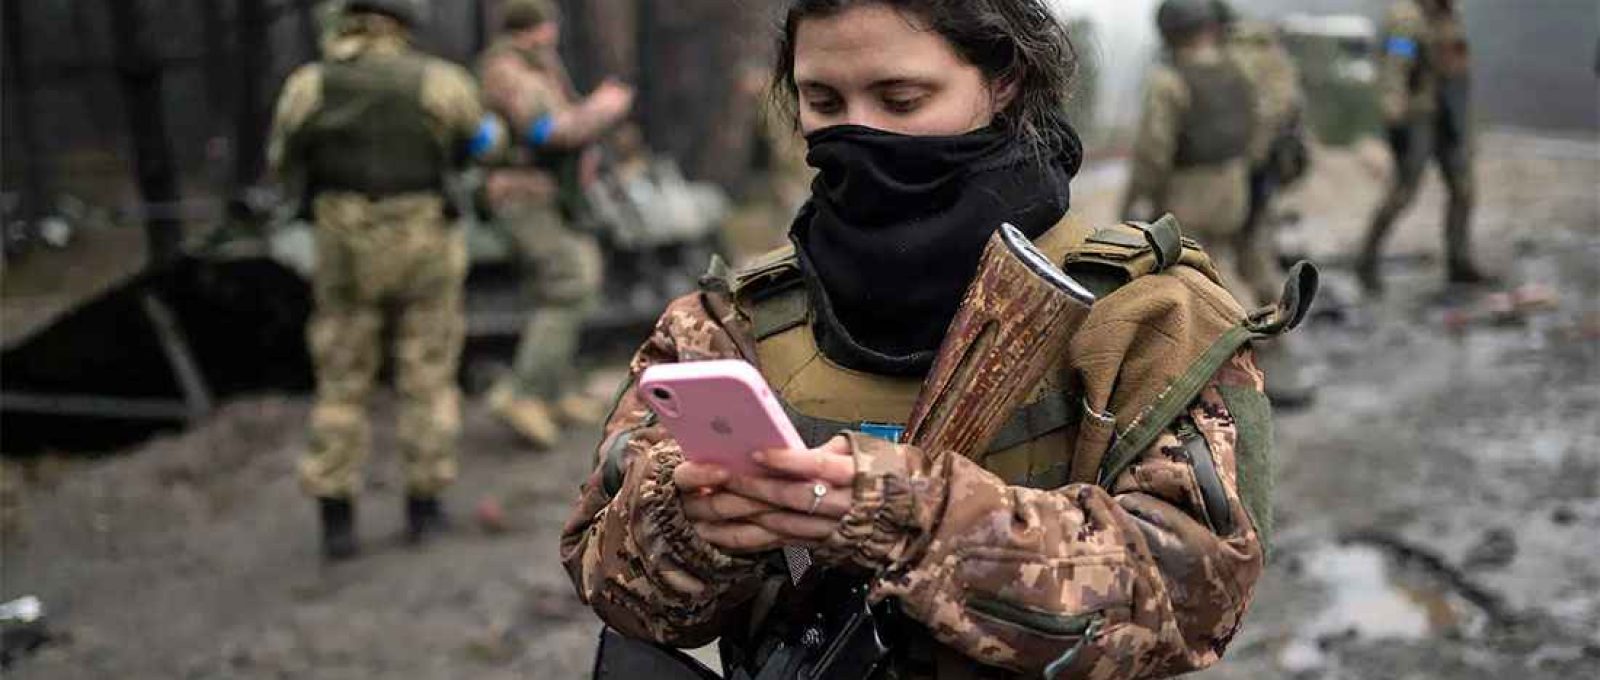 Militar ucraniana verifica seu telefone após uma varredura militar nos arredores de Kiev (Rodrigo Abd/The Associated Press).